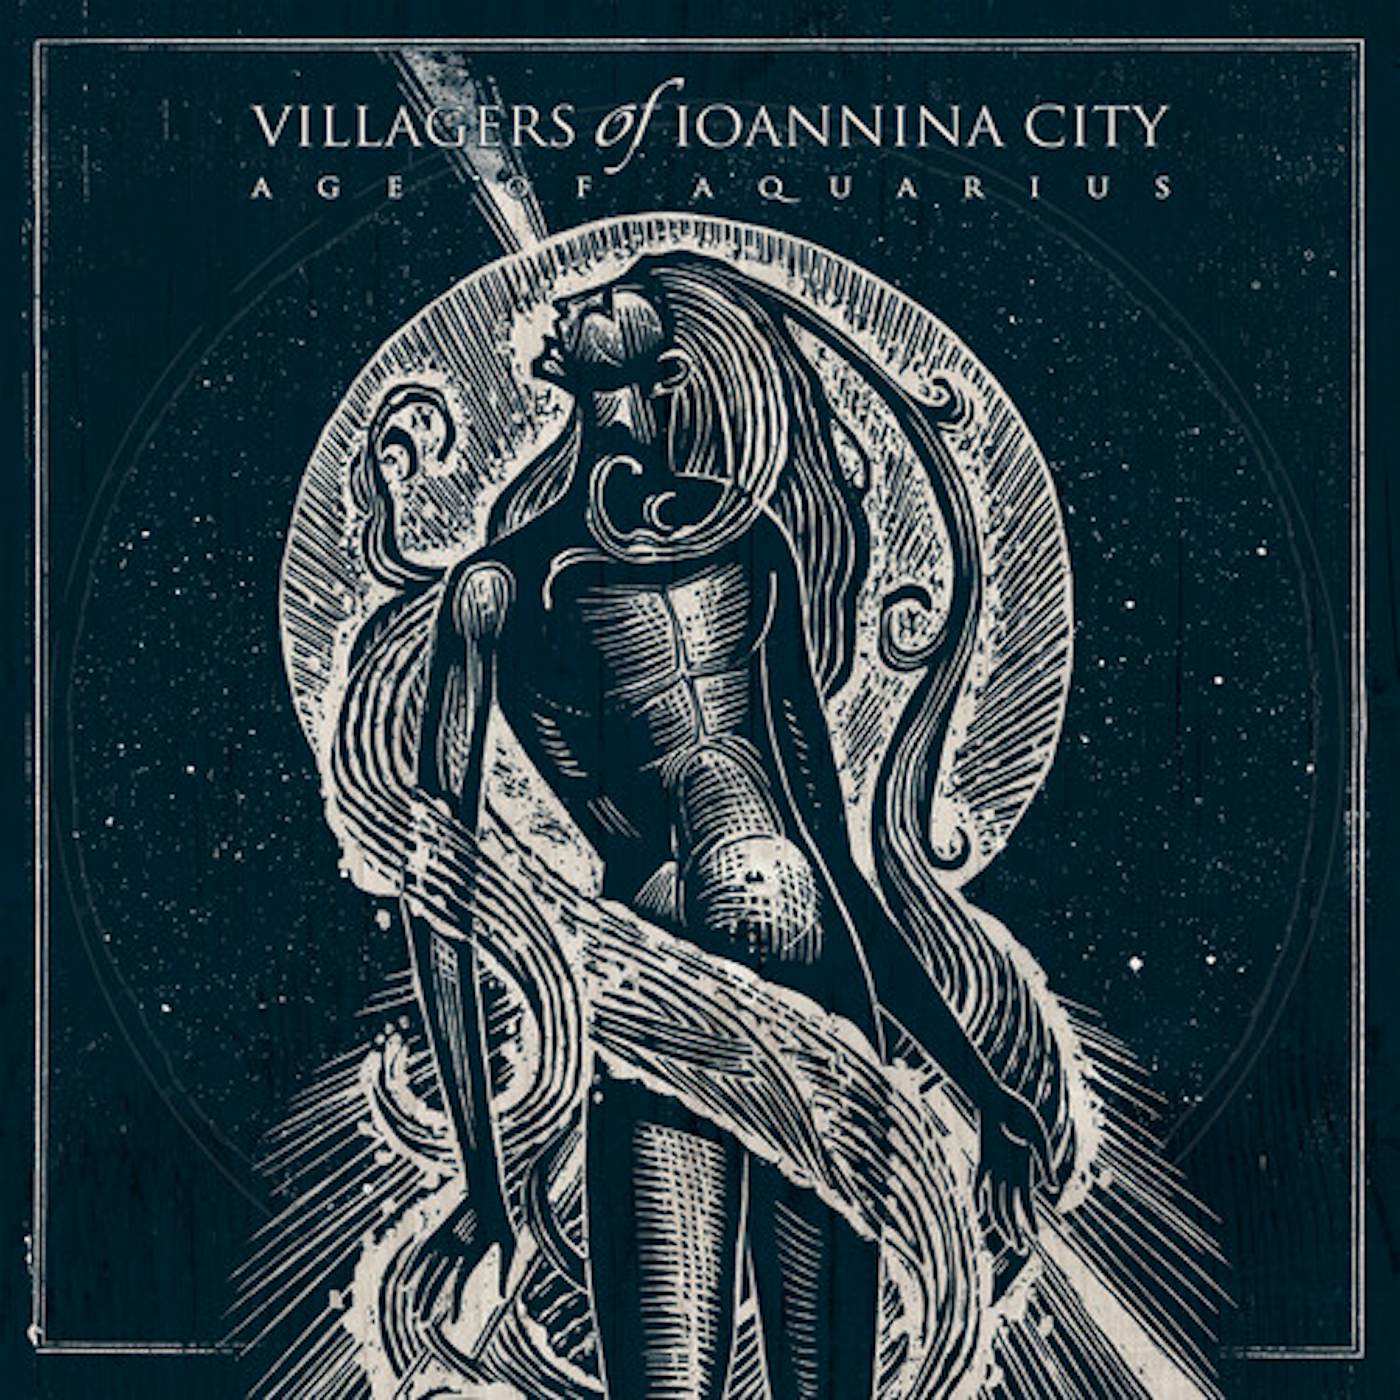 Villagers of Ioannina City Age of Aquarius Vinyl Record